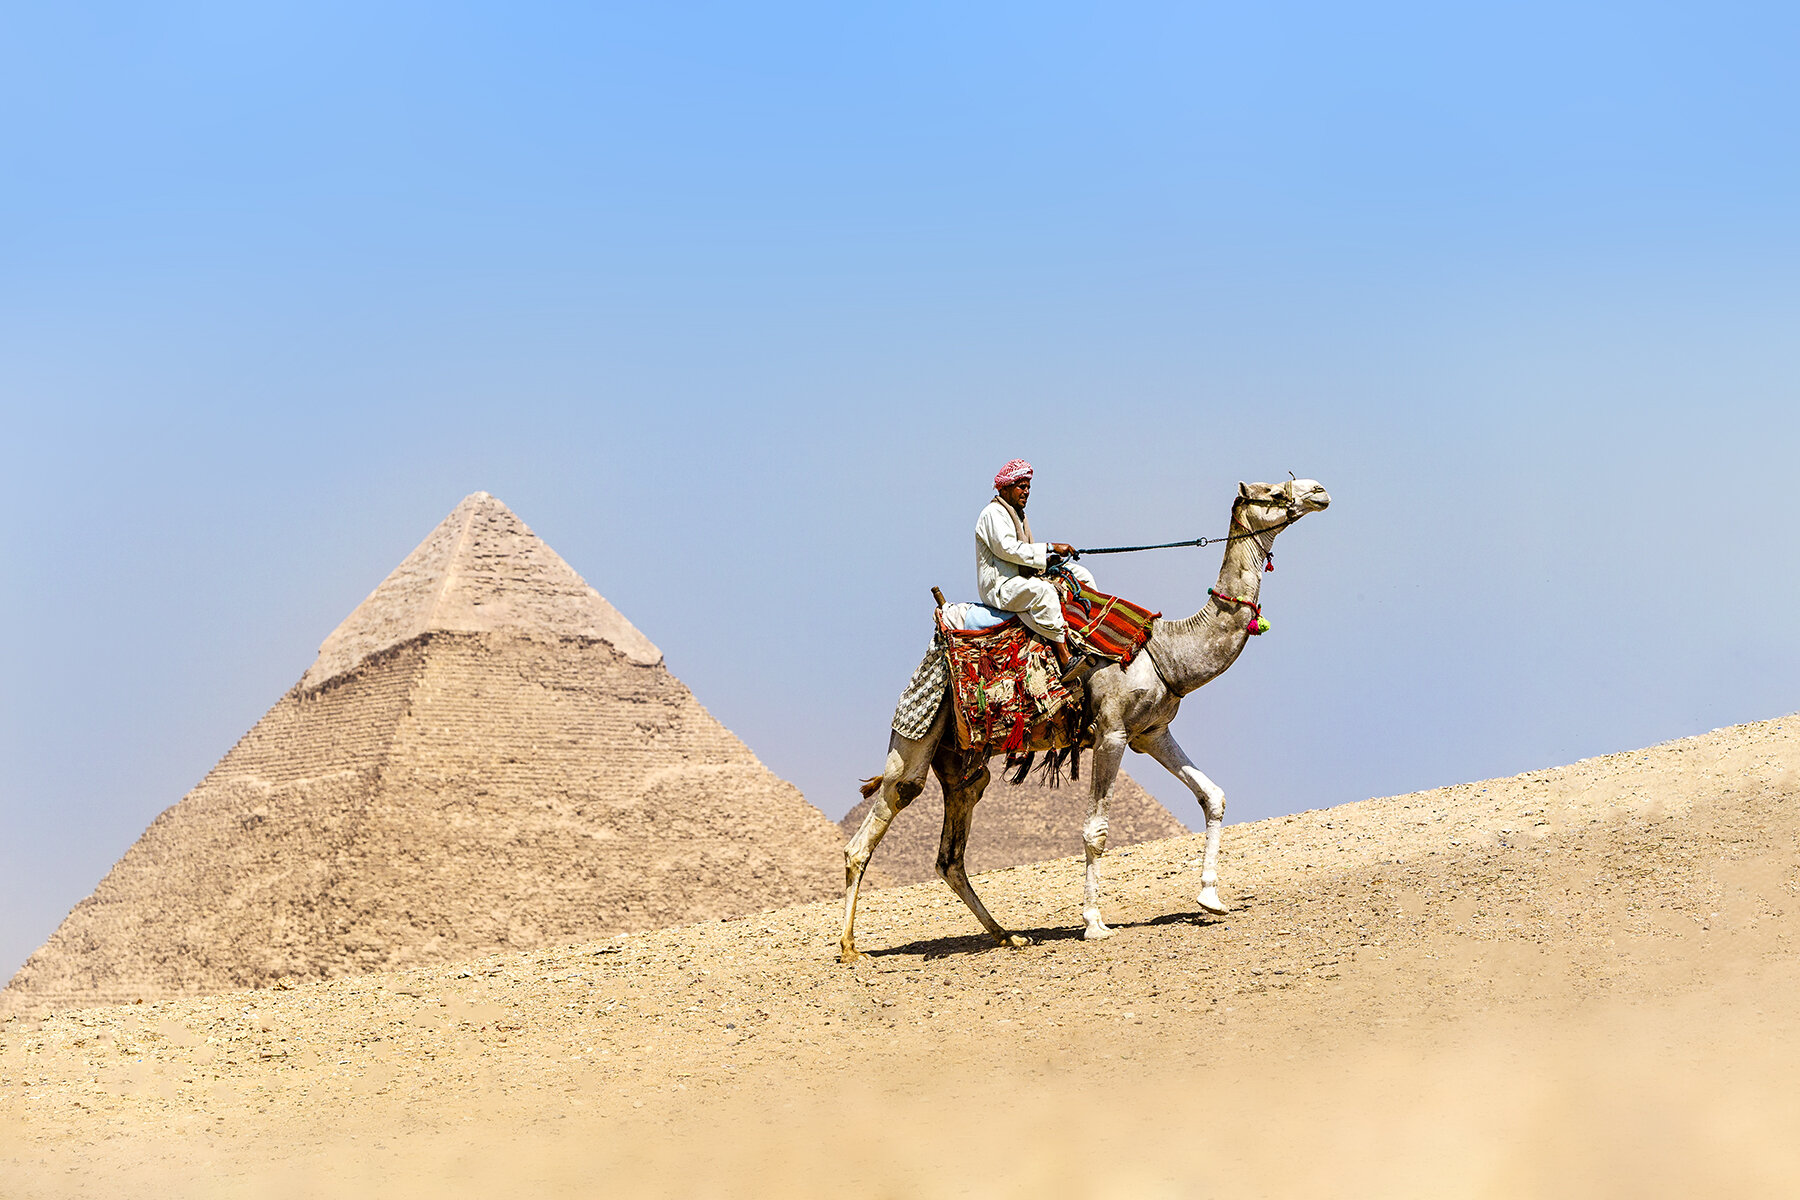 Giza pyramids, Egypt by Chris McLennan